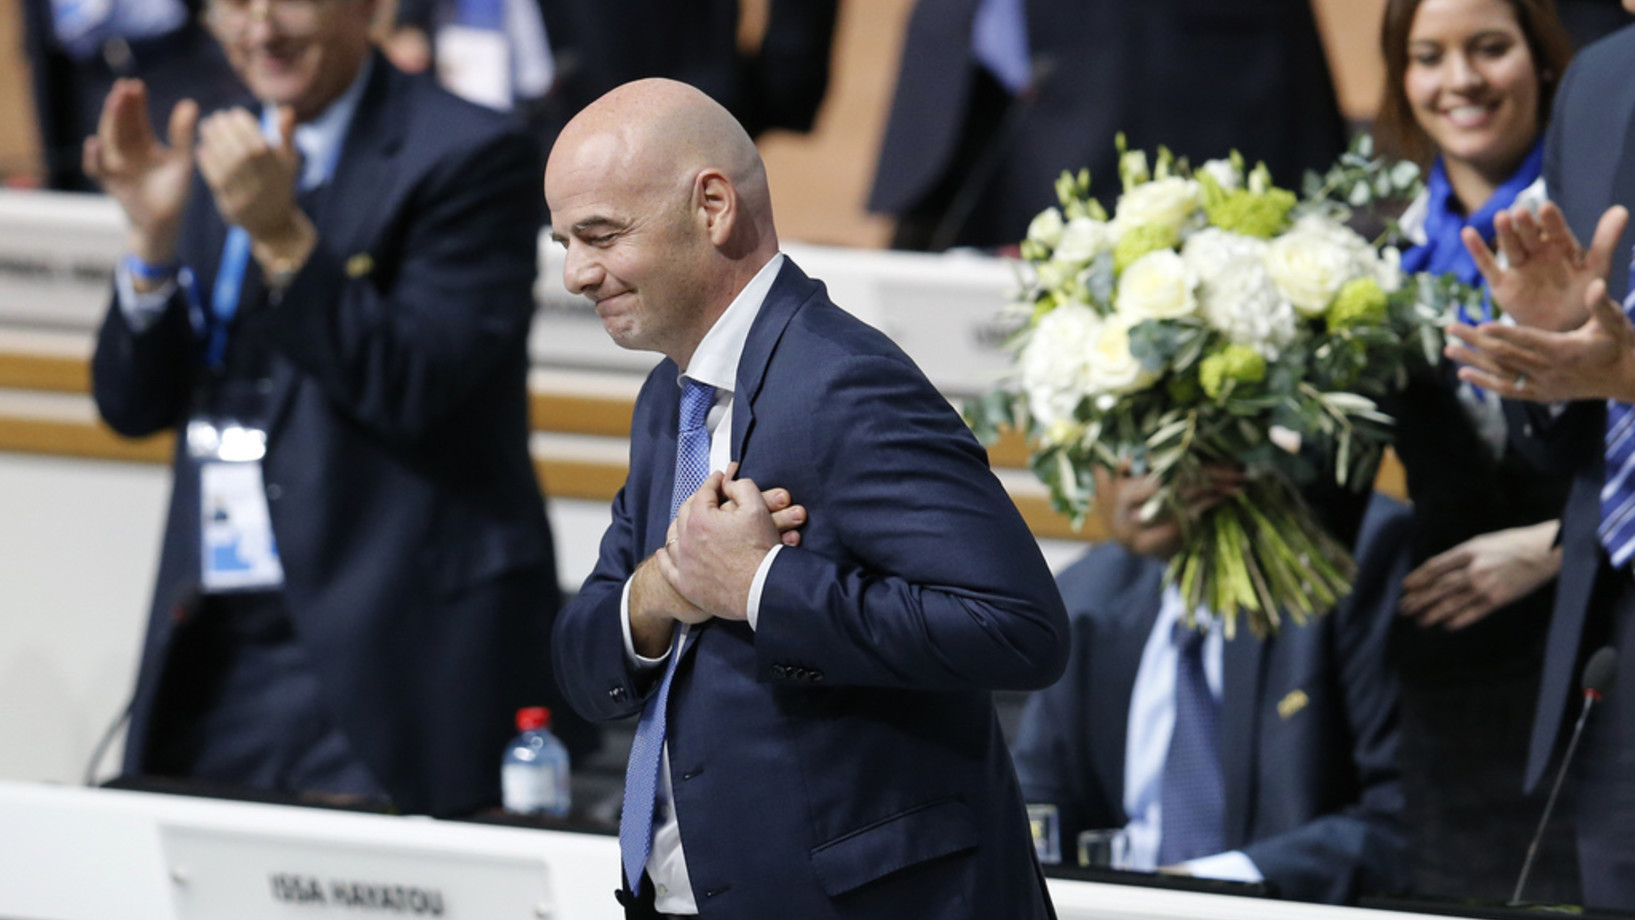 Der Schweizer Gianni Infantino ist neuer Präsident der Fifa. (Foto: Keystone/AP, Michael Probst)
